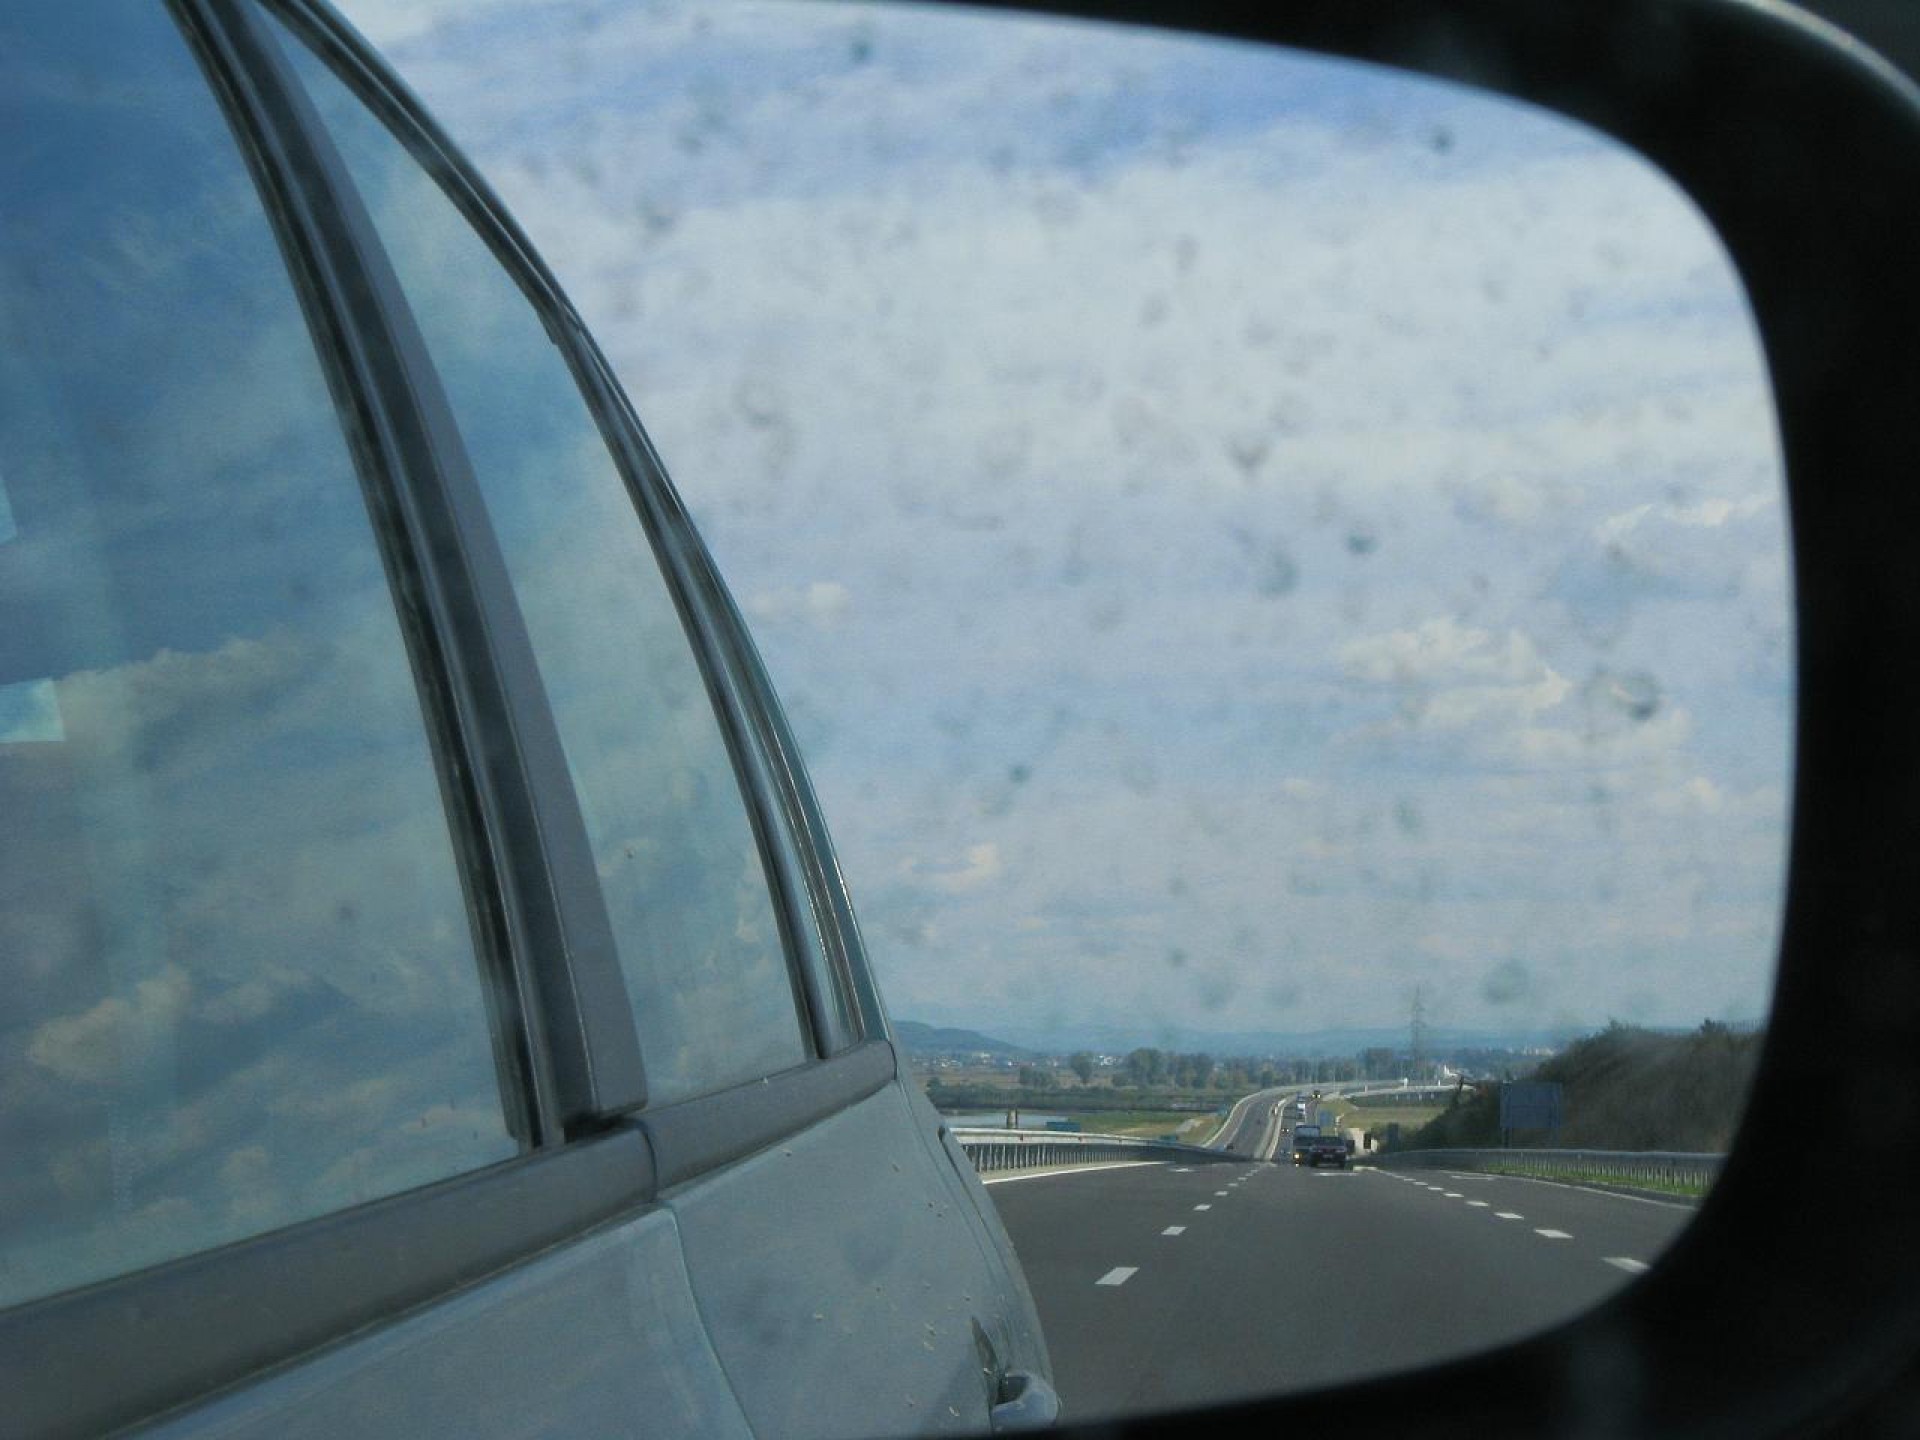 Trafic restricţionat pe Autostrada Bucureşti - Piteşti pentru trasarea marcajelor rutiere